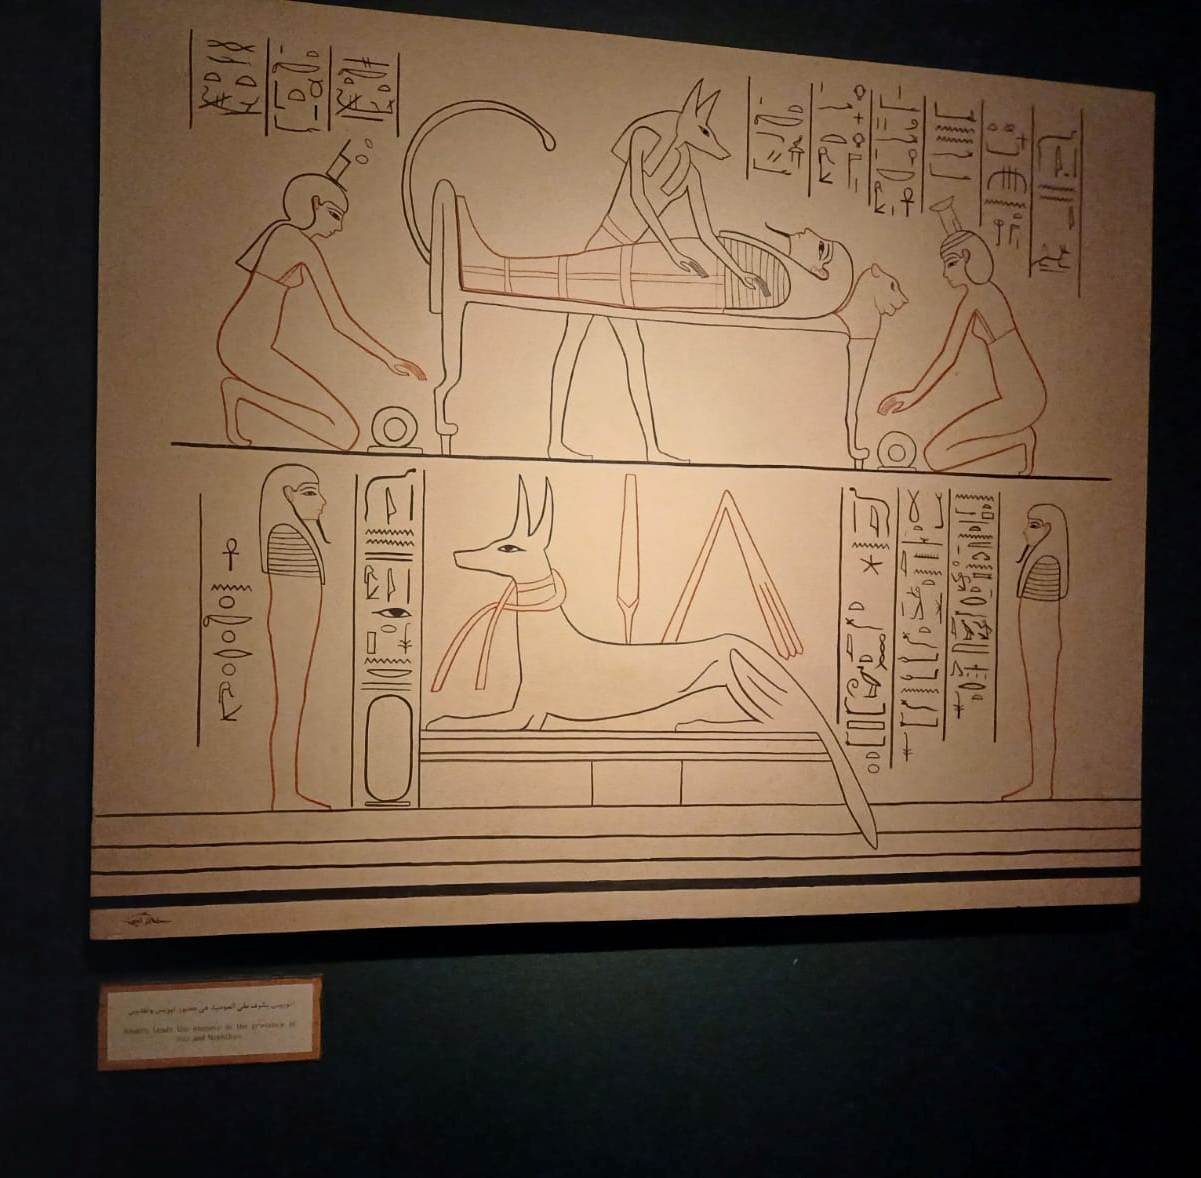 لوحة توضح مراحل التحنيط داخل المتحف بالأقصر